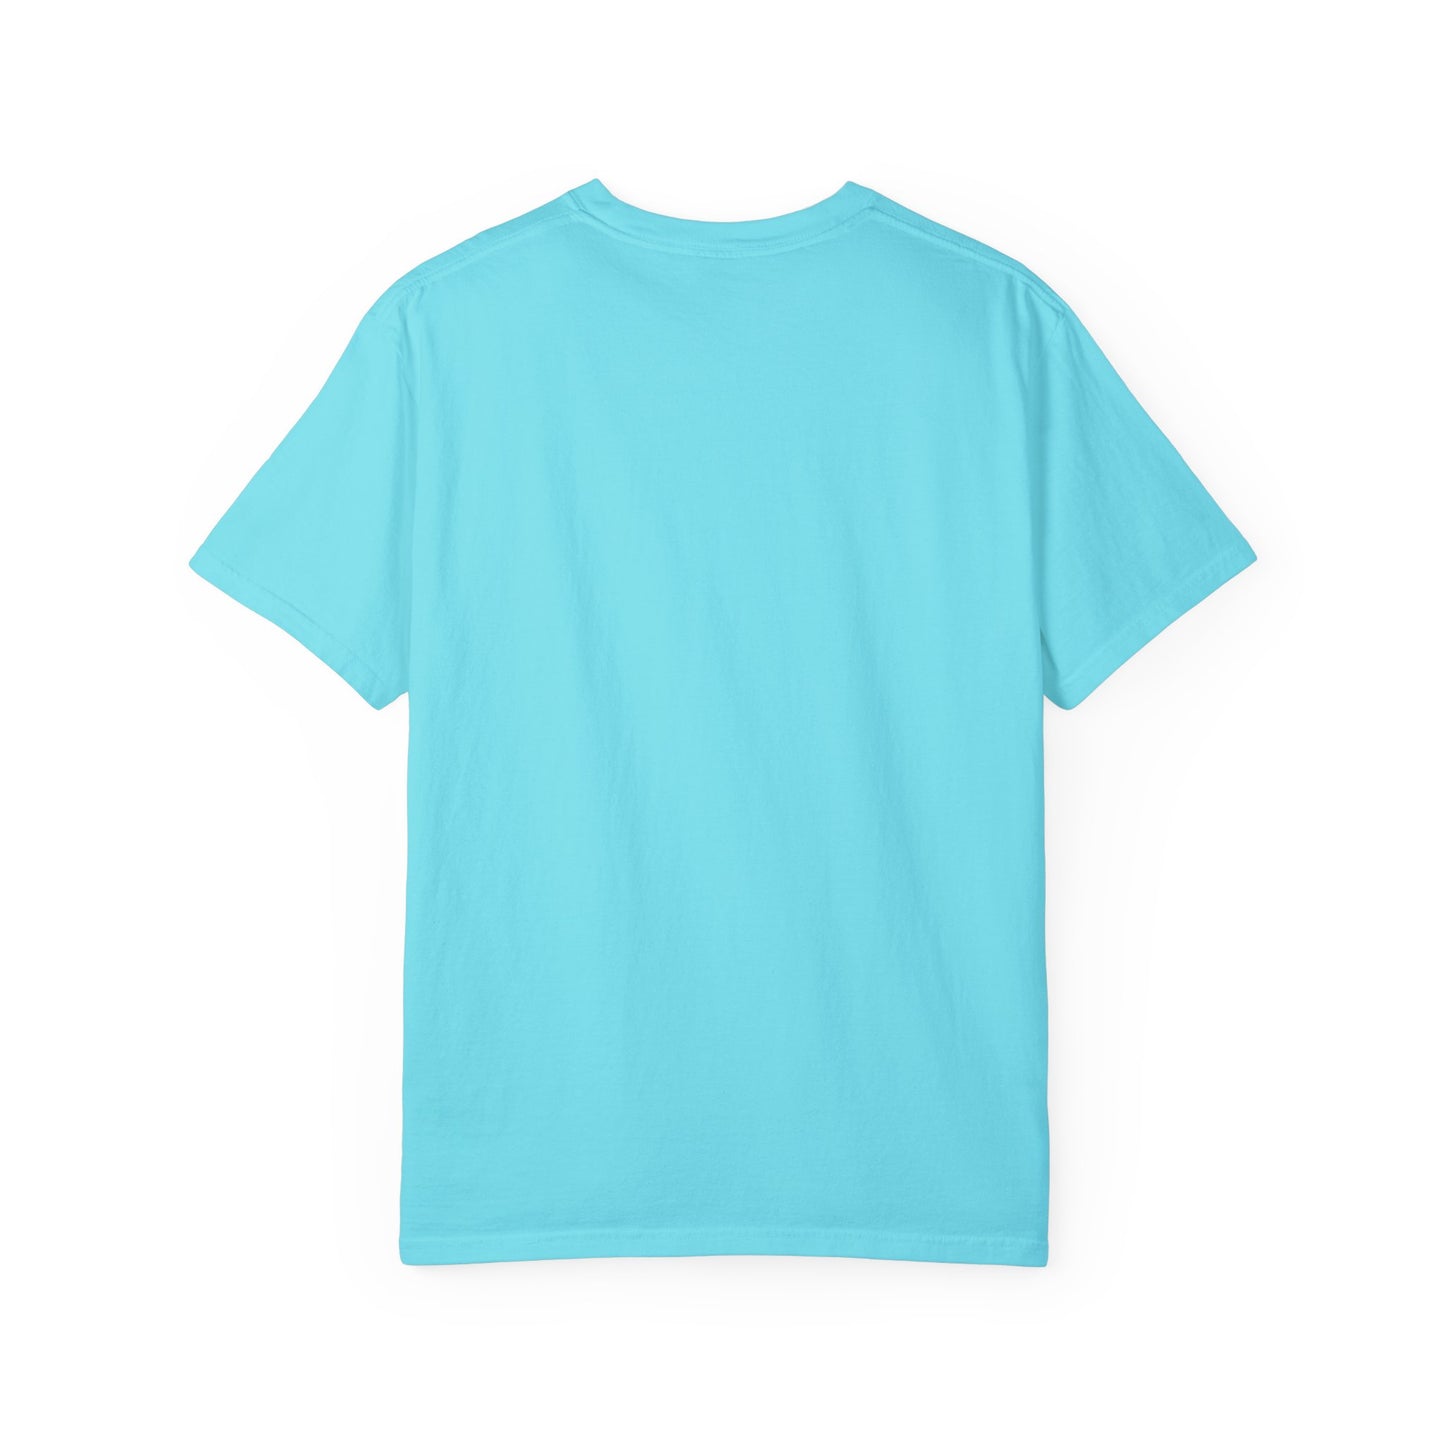 RISK TAKER Unisex Garment-Dyed T-shirt